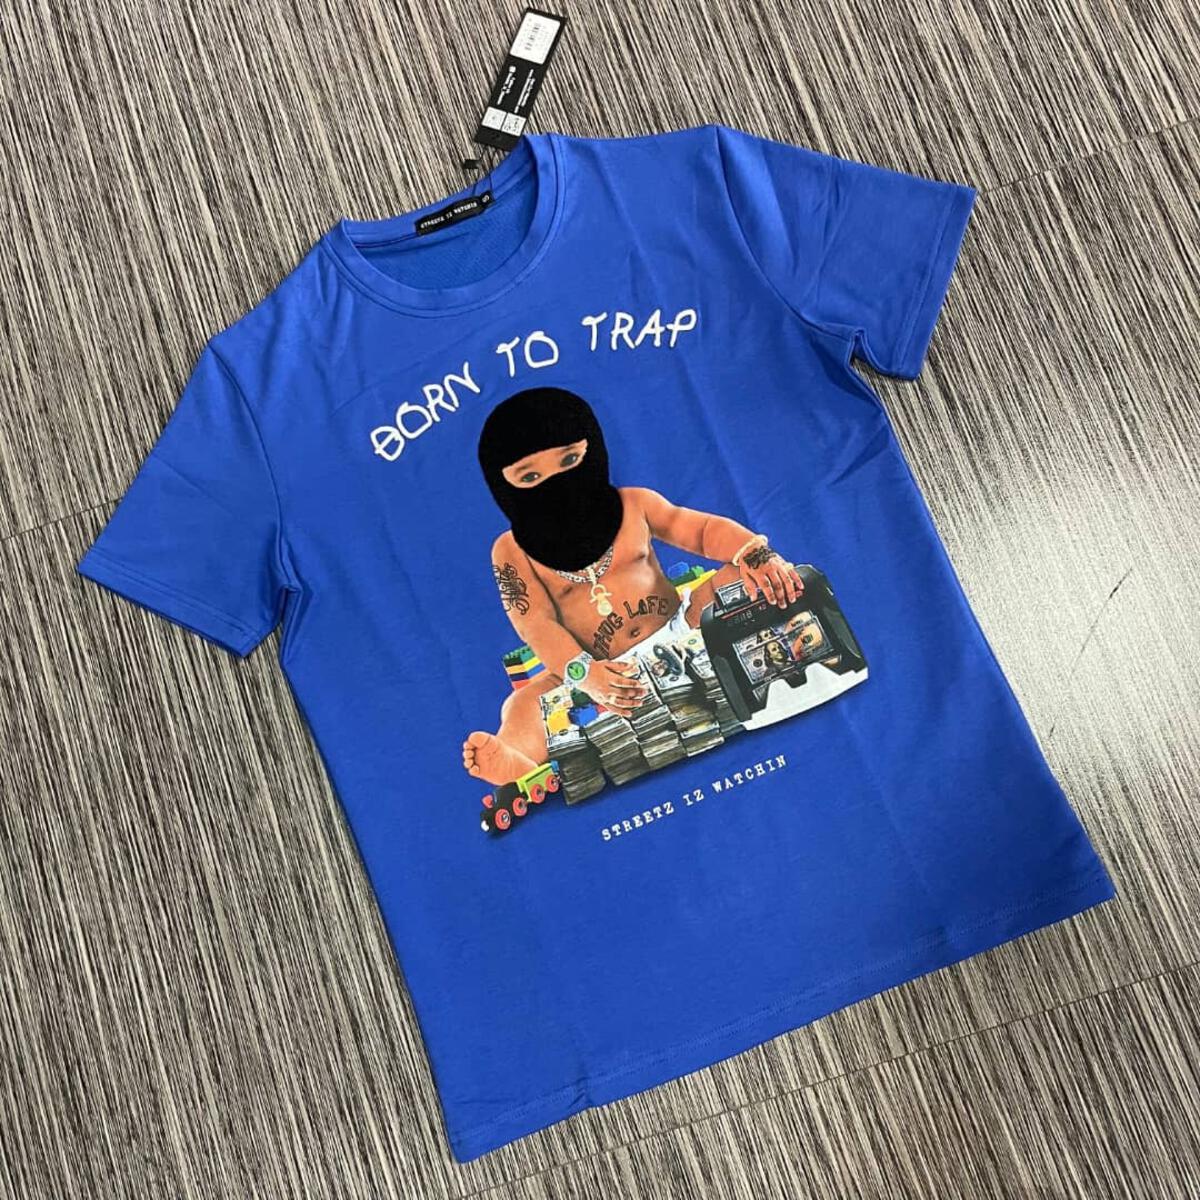 VIP Watchin - 2 – Iz Trap Streetz Baby T-Shirt Wear Shop